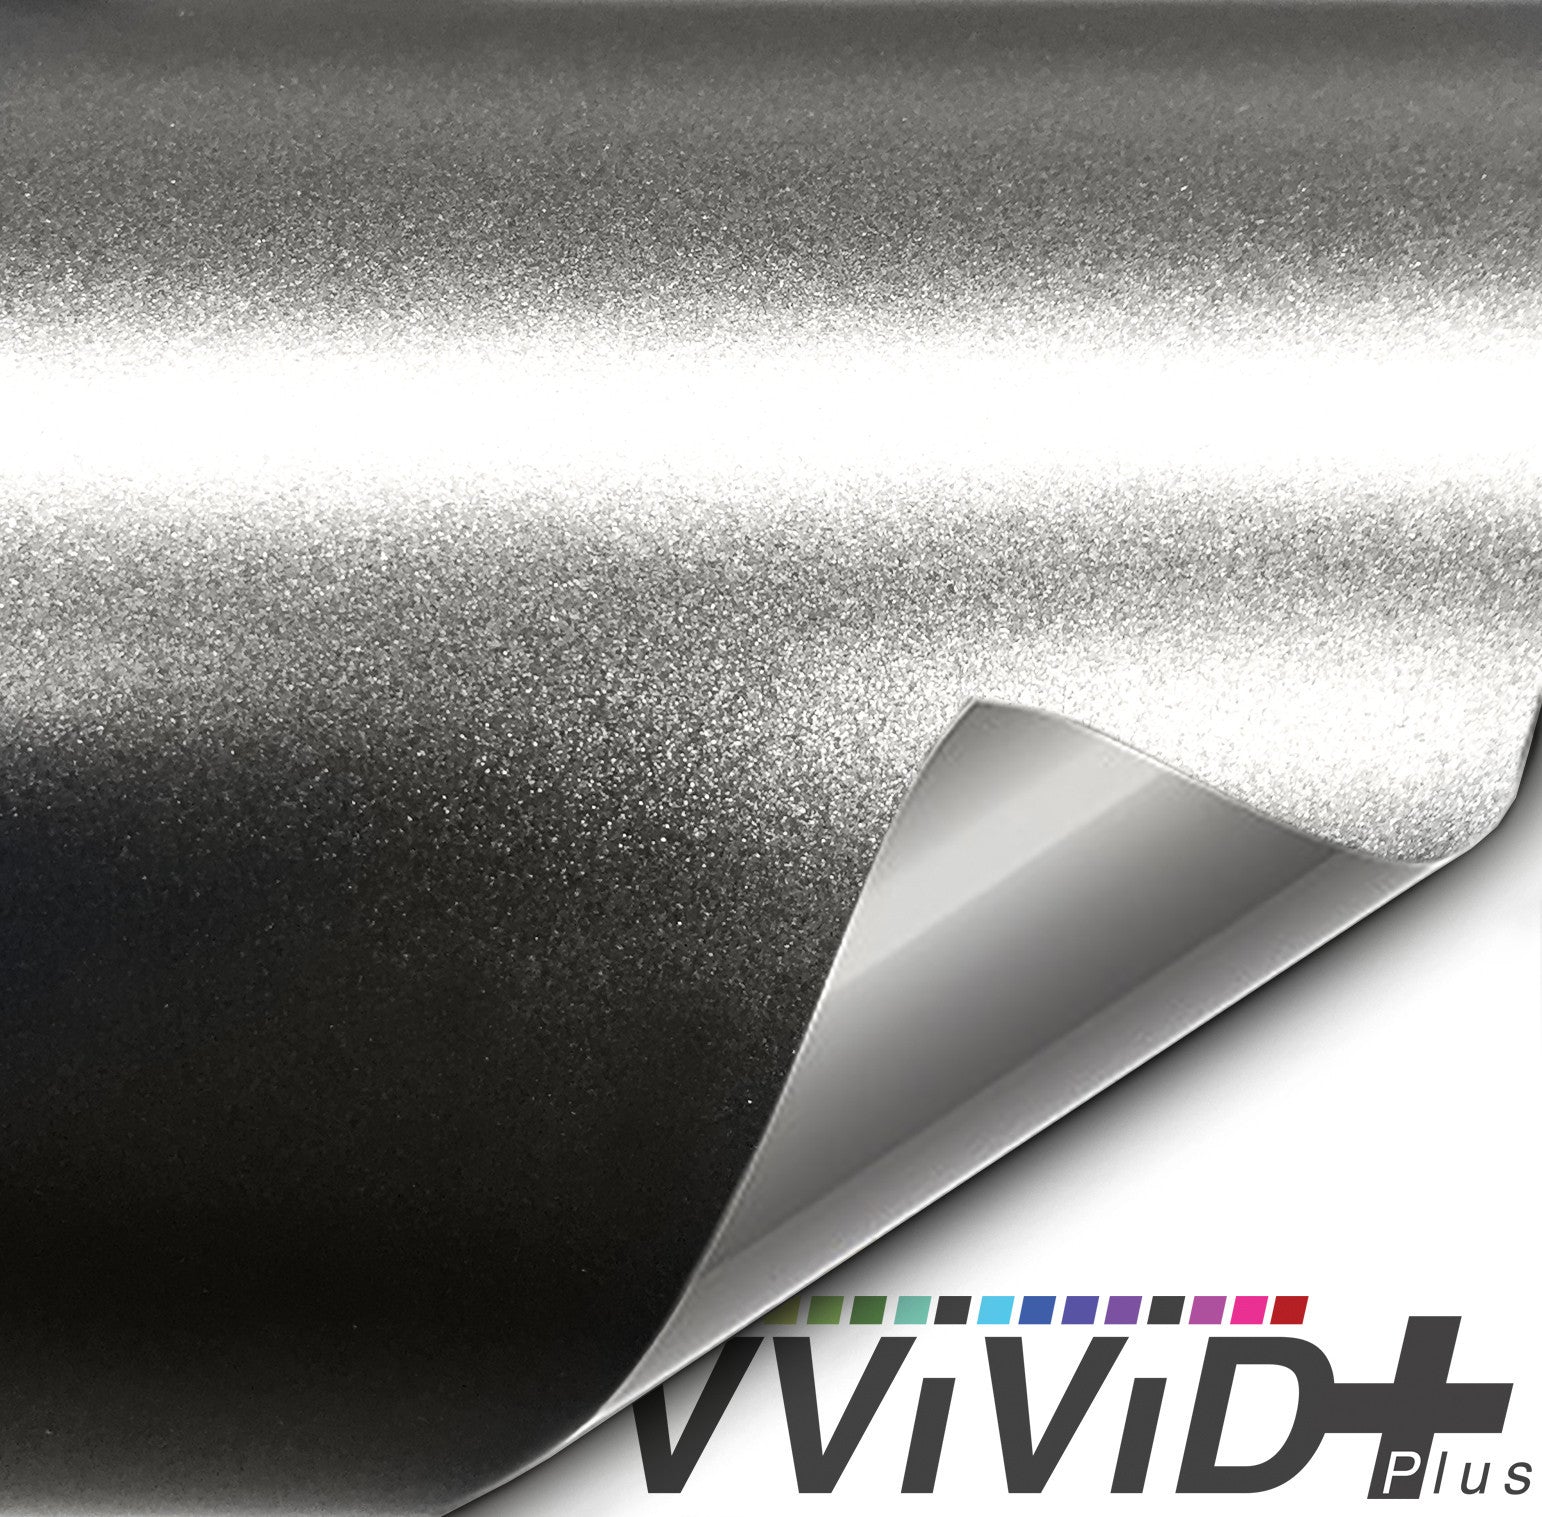 2017 VViViD+ Satin Chrome Titanium Vinyl Wrap | Vvivid Canada